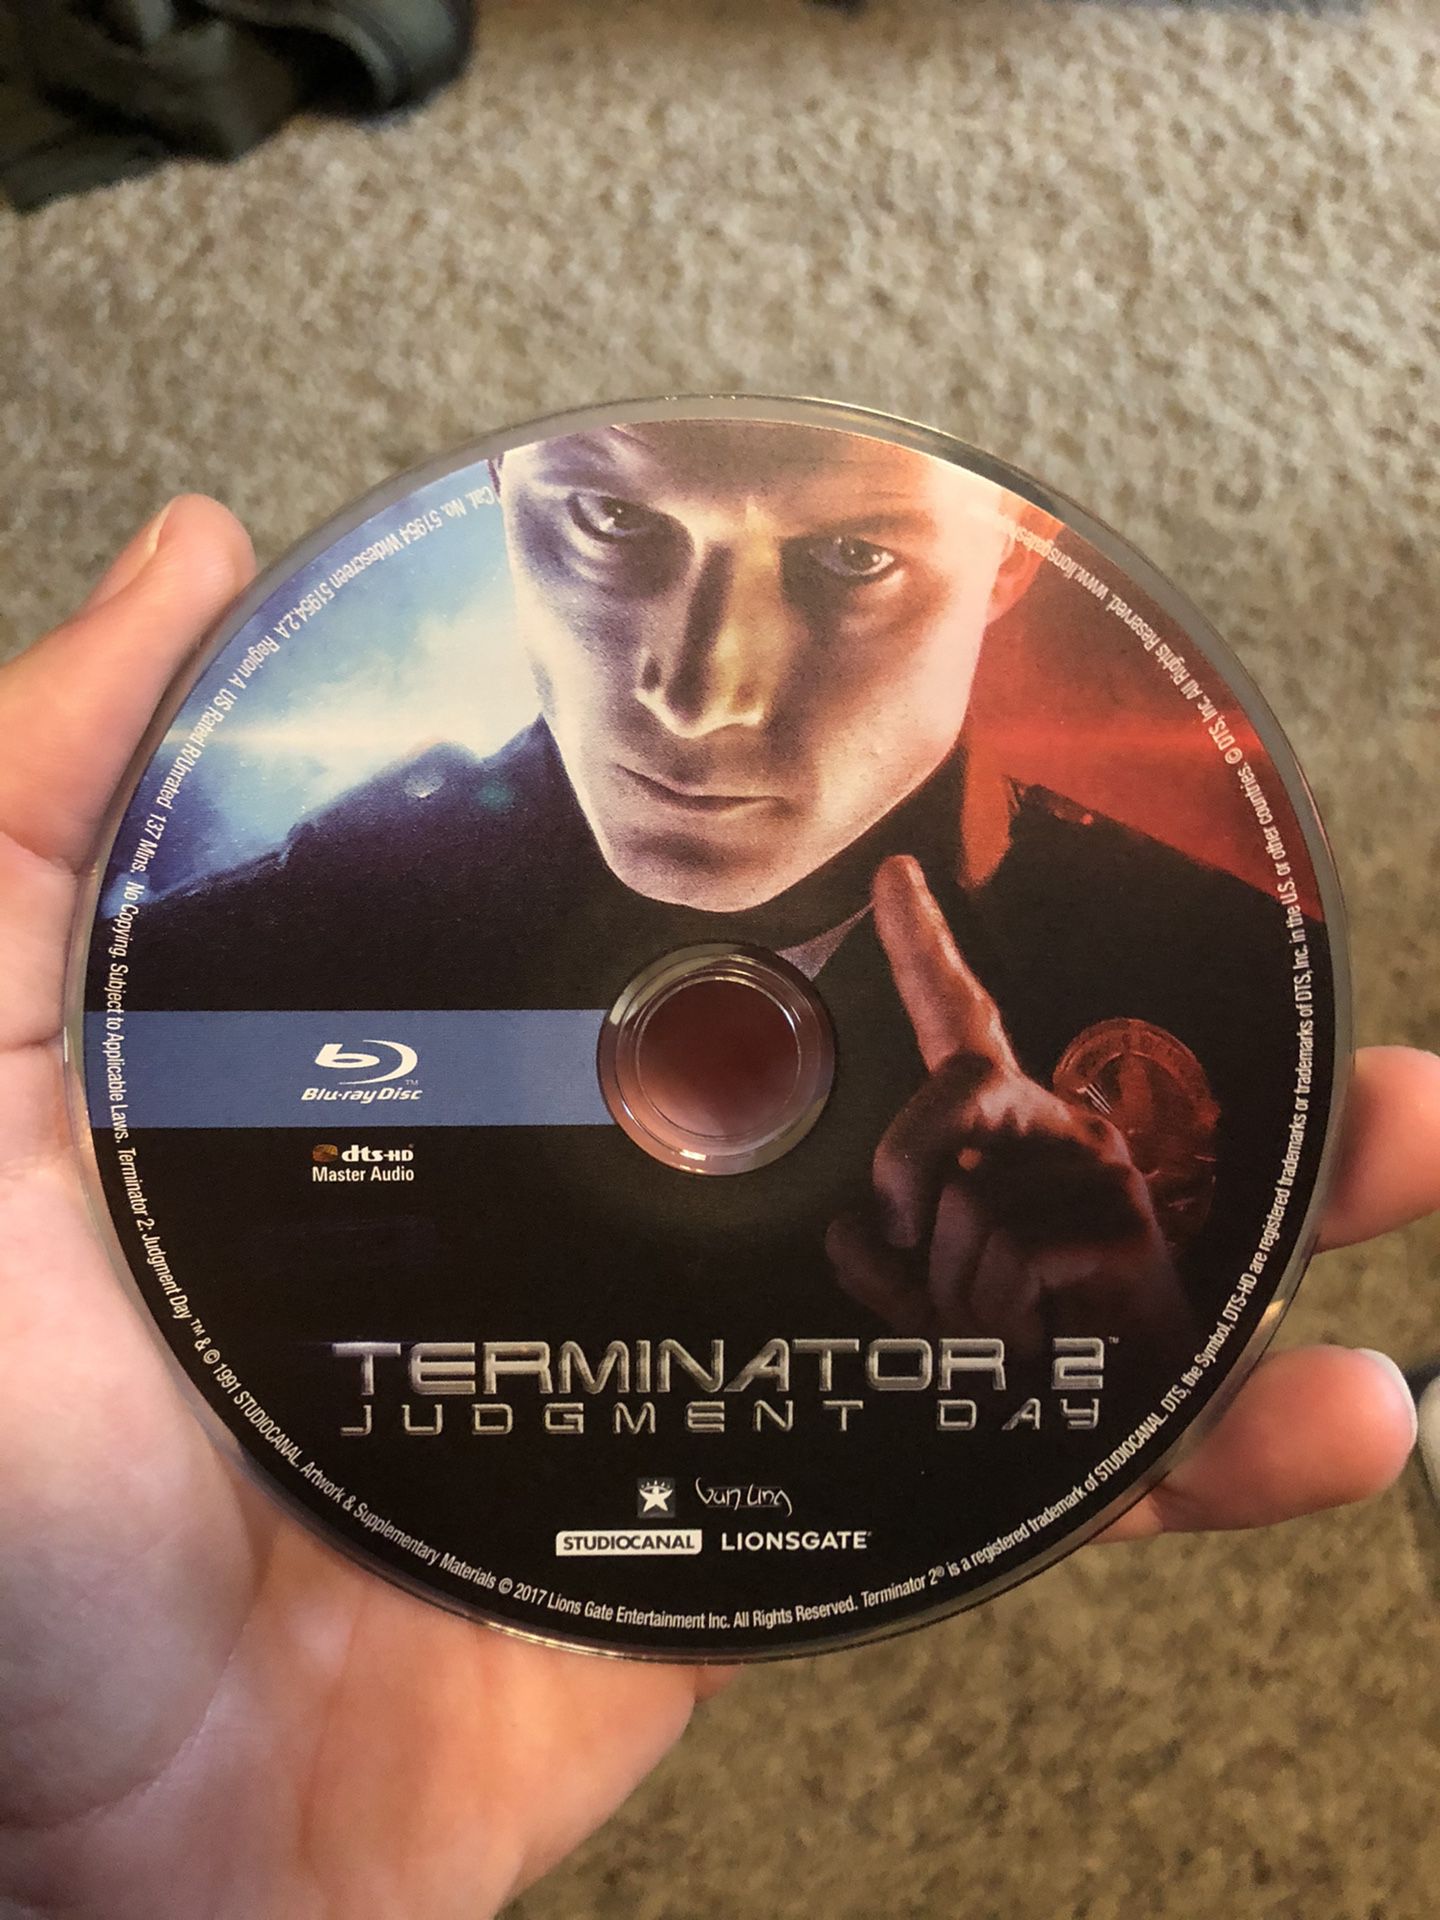 Terminator 2 judgement day Blu-ray